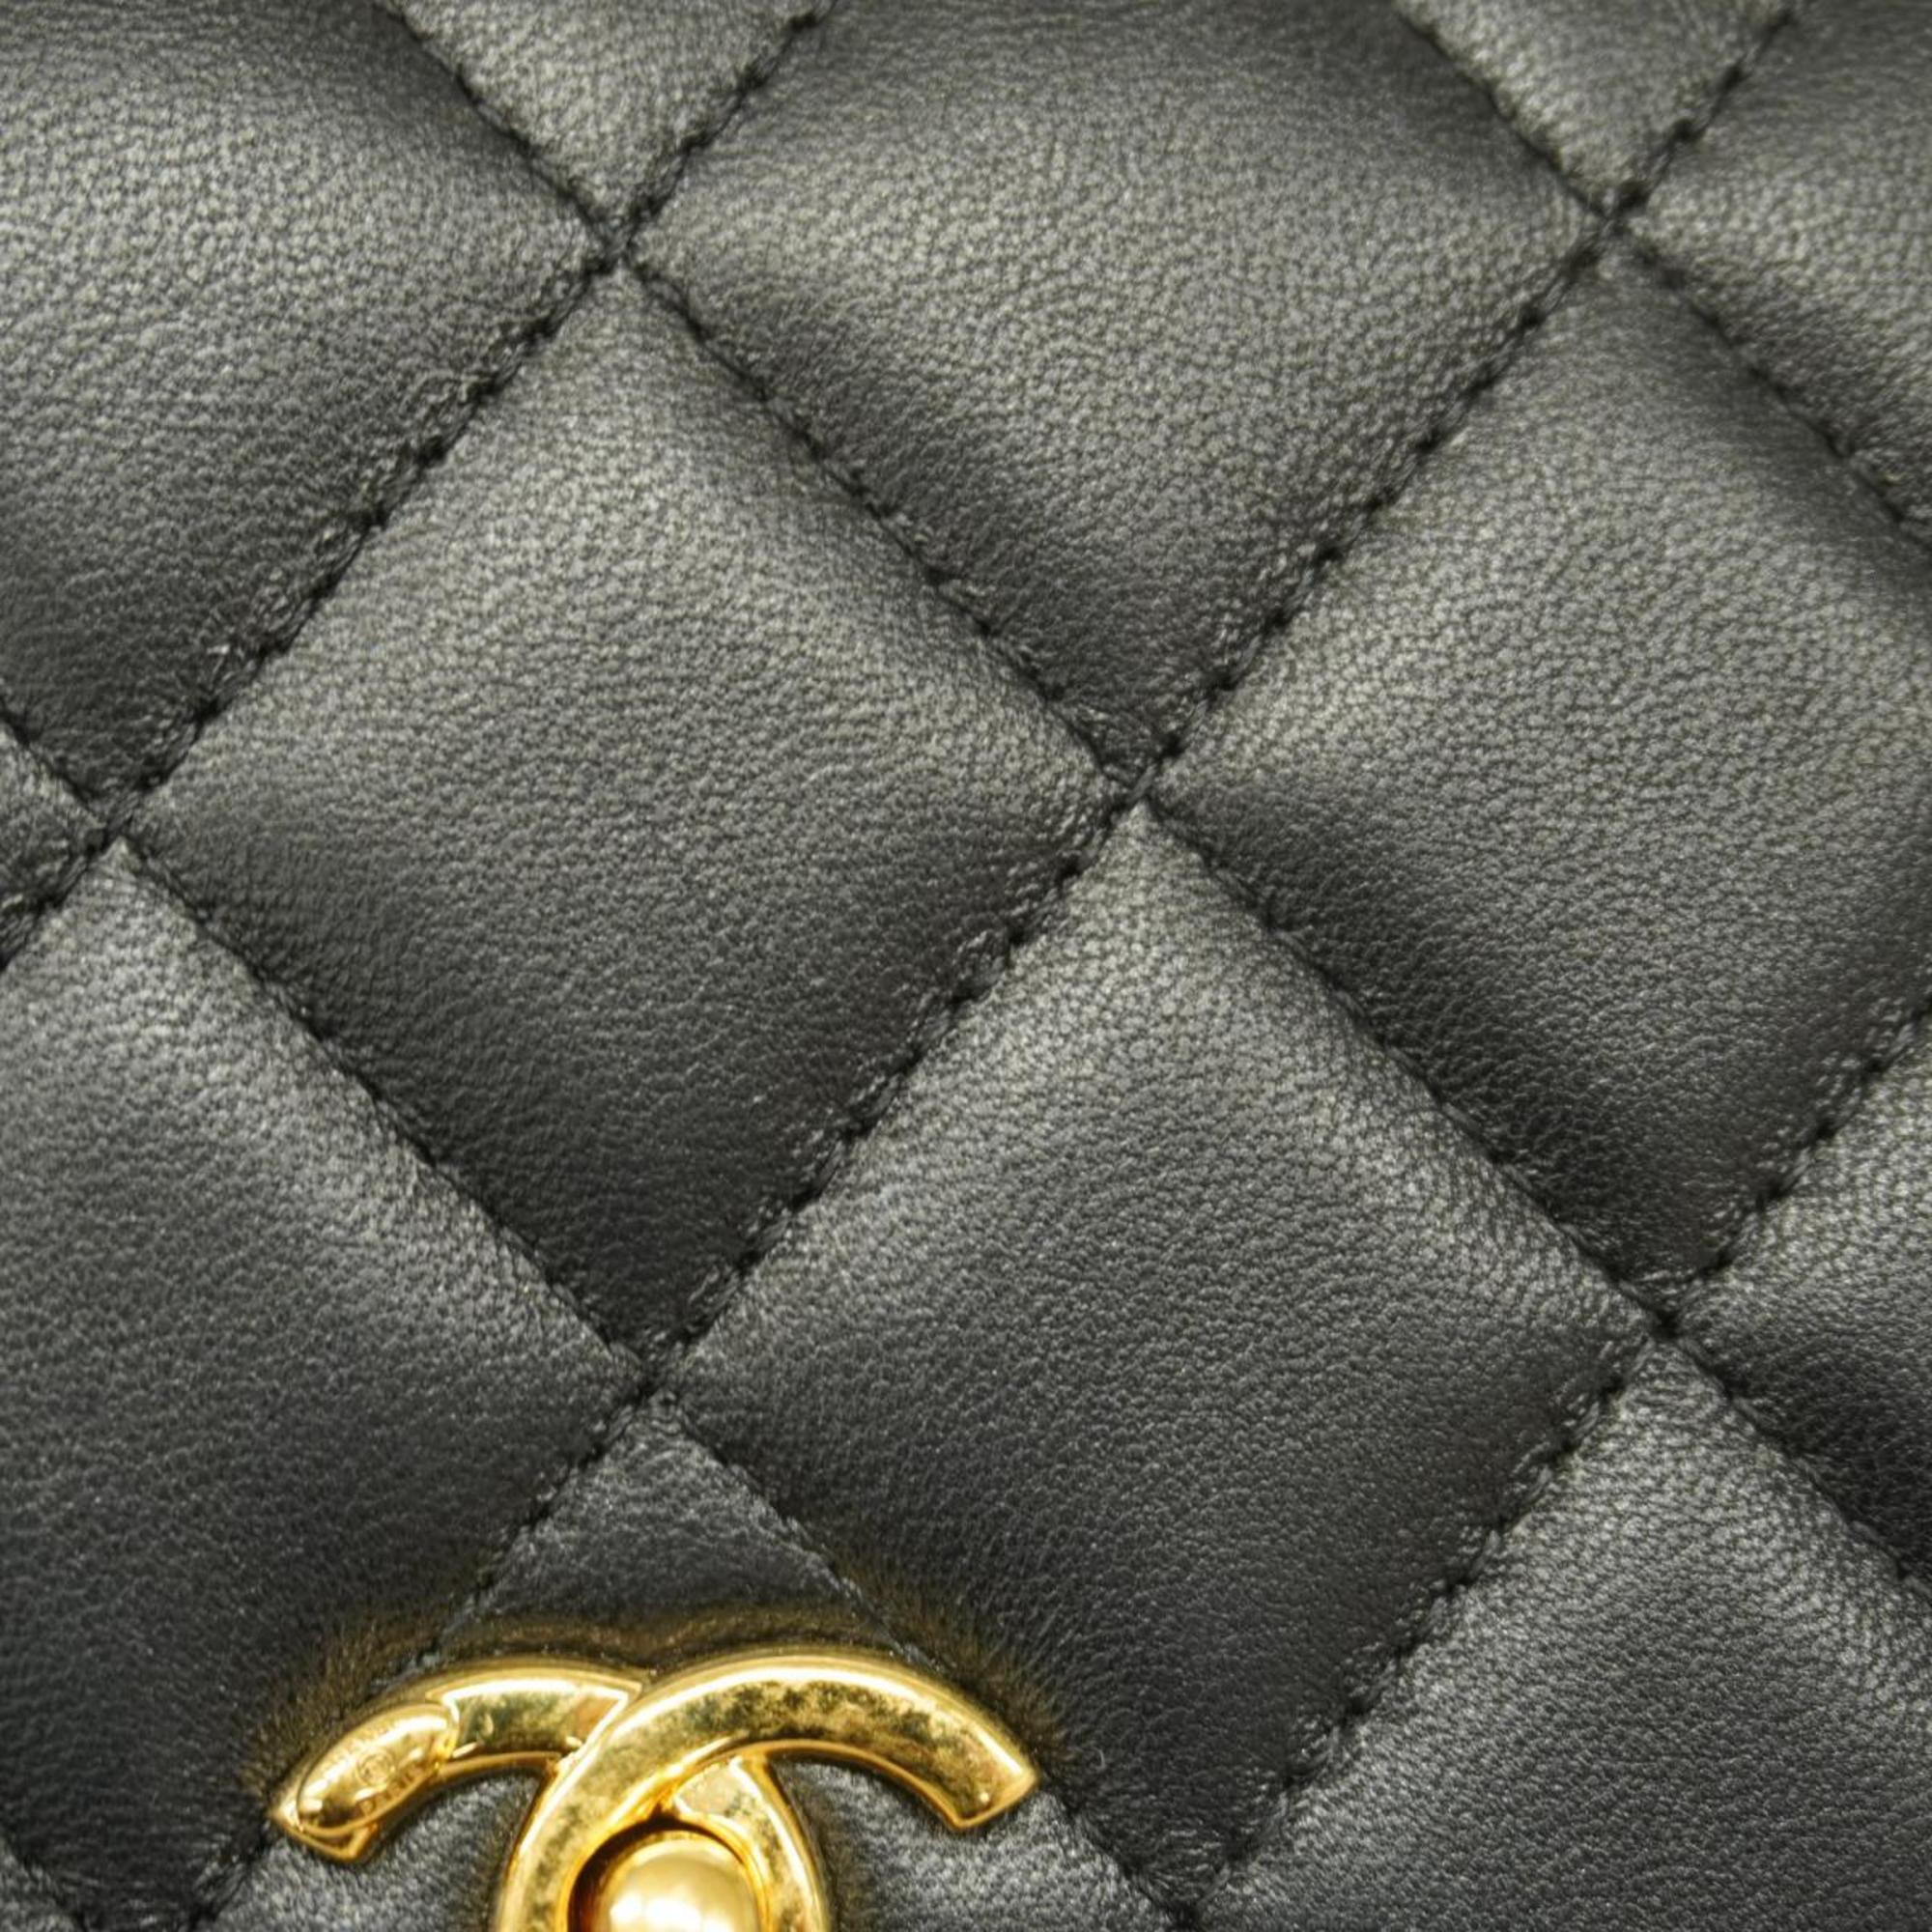 Chanel Shoulder Wallet Matelasse Chain Lambskin Black Gold Hardware Women's